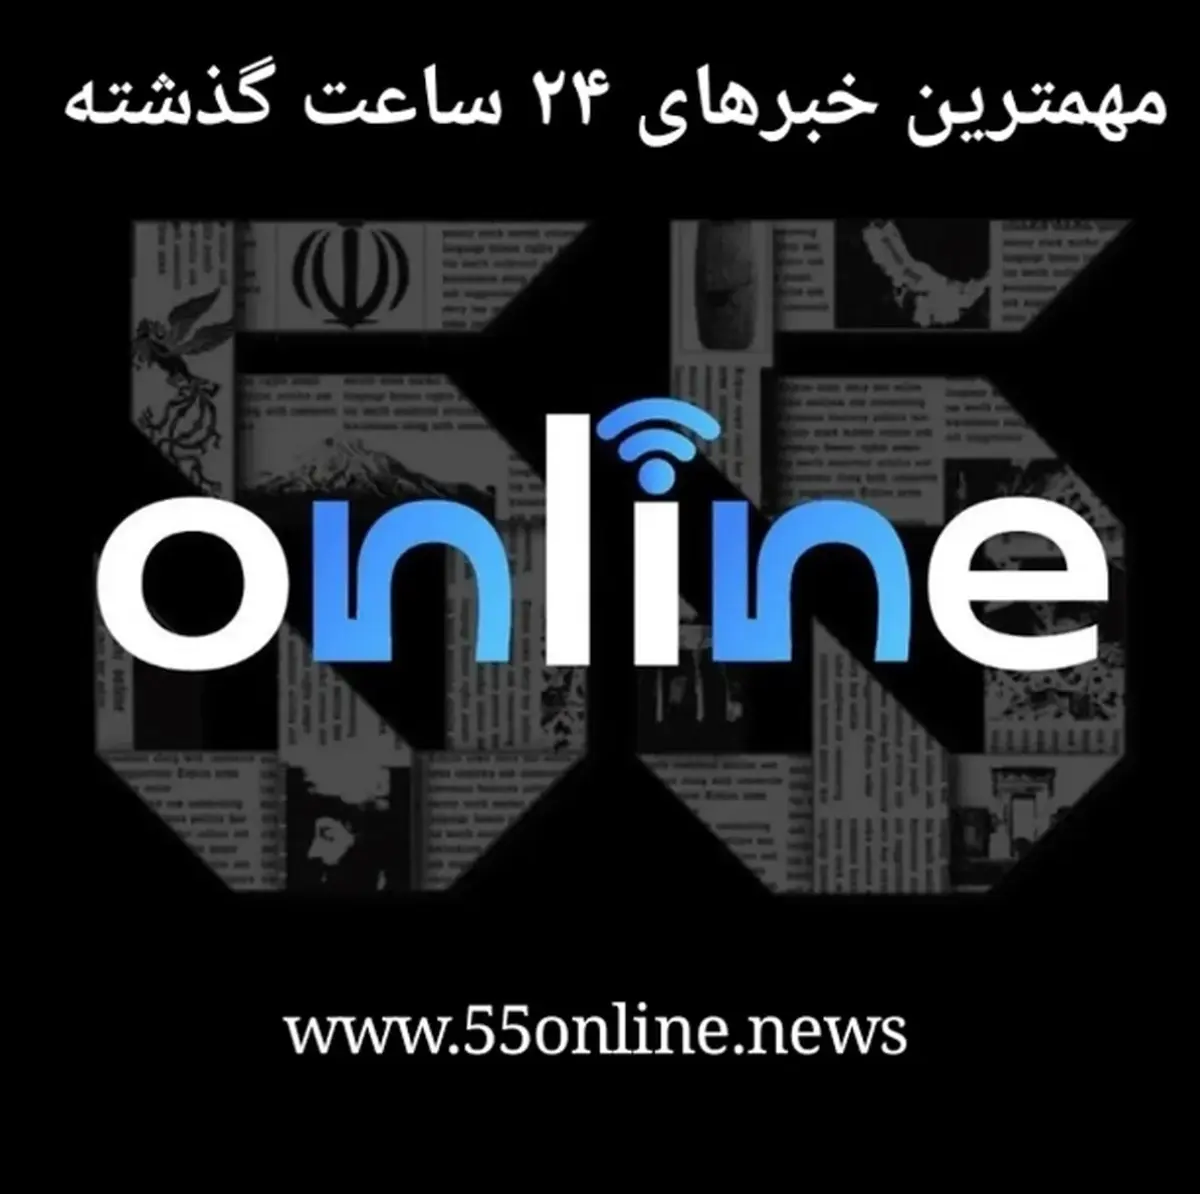 مروری به اخبار و اتفاقات مهم امروز | خلاصه اخبار مهم روز ۳۰ خرداد 